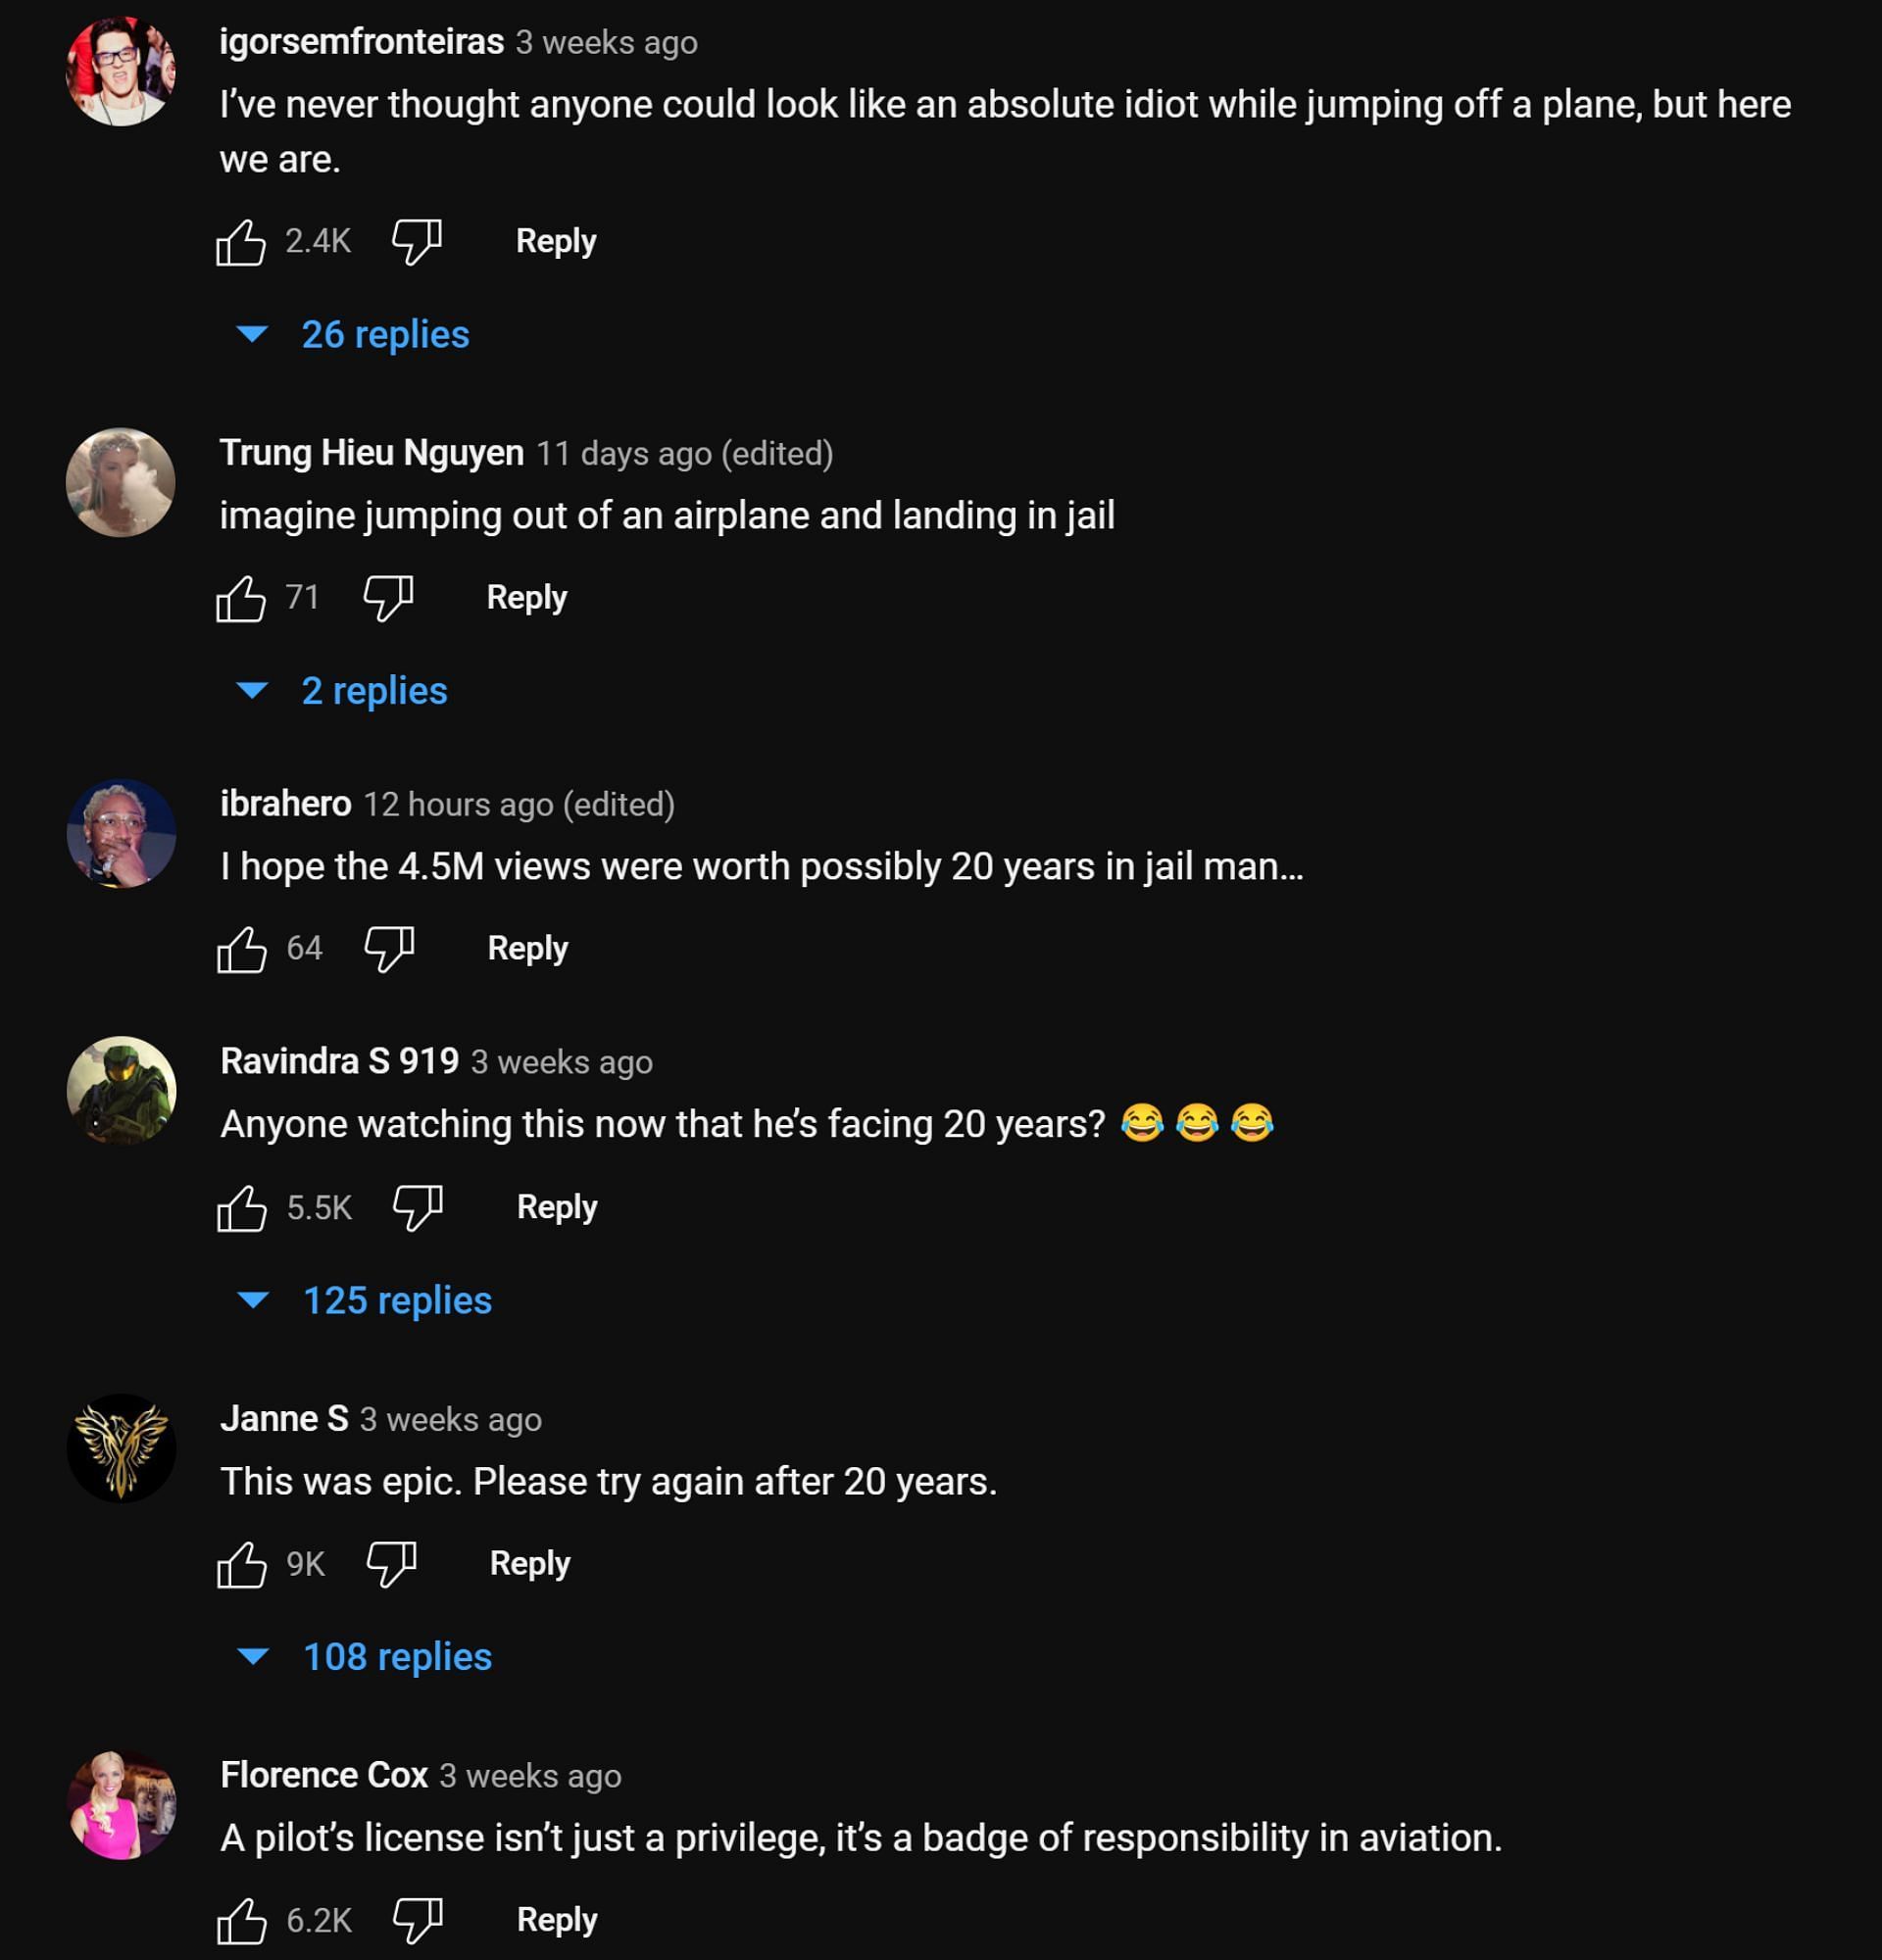 Người hâm mộ chia sẻ suy nghĩ về YouTuber đối mặt với 20 năm tù sau tai nạn máy bay (Ảnh qua TrevorJacob/YouTube)